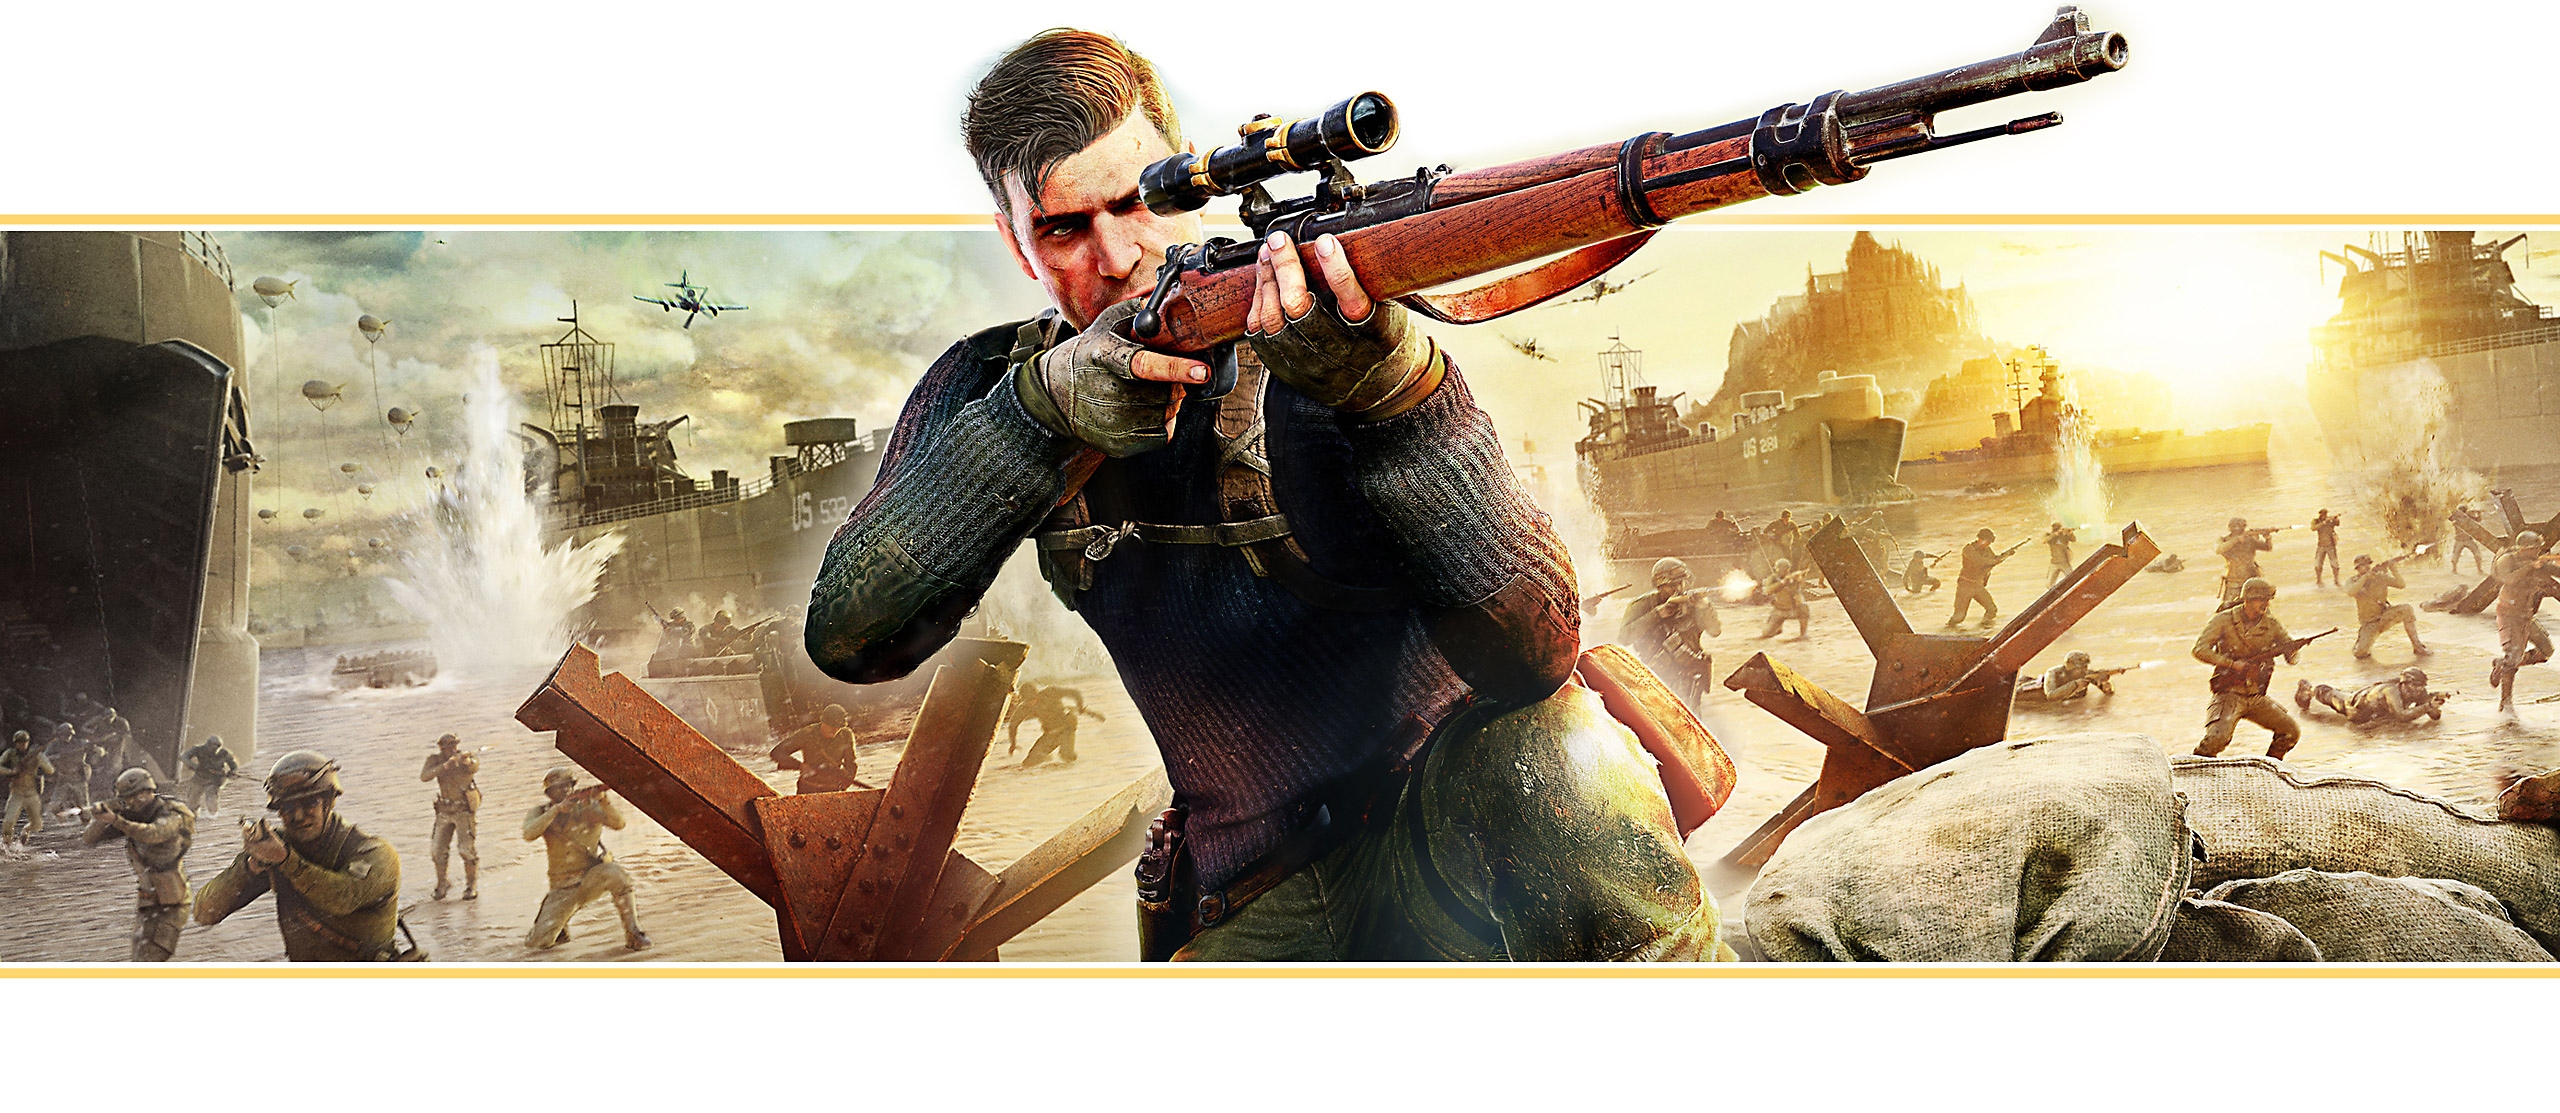 Banner destacado de Sniper Elite 5 basado en arte principal del juego; el personaje principal apunta con un rifle de francotirador